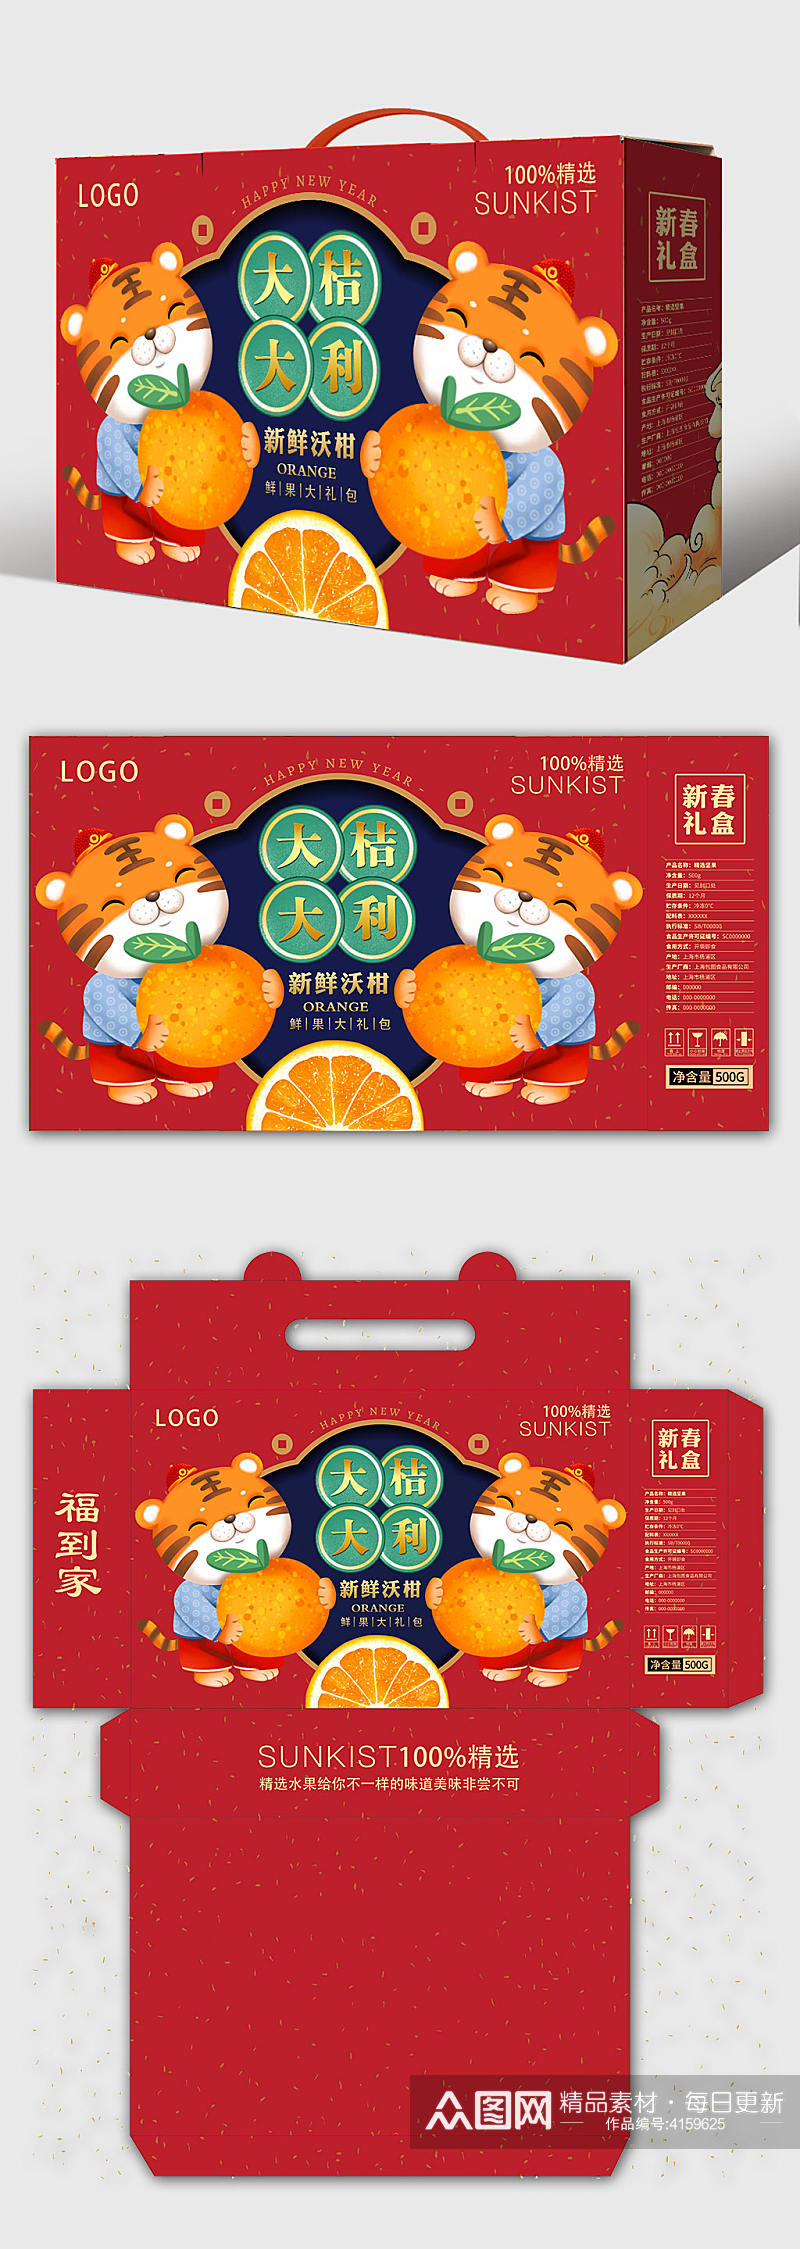 大桔大利虎年新年春节包装设计年货礼盒素材